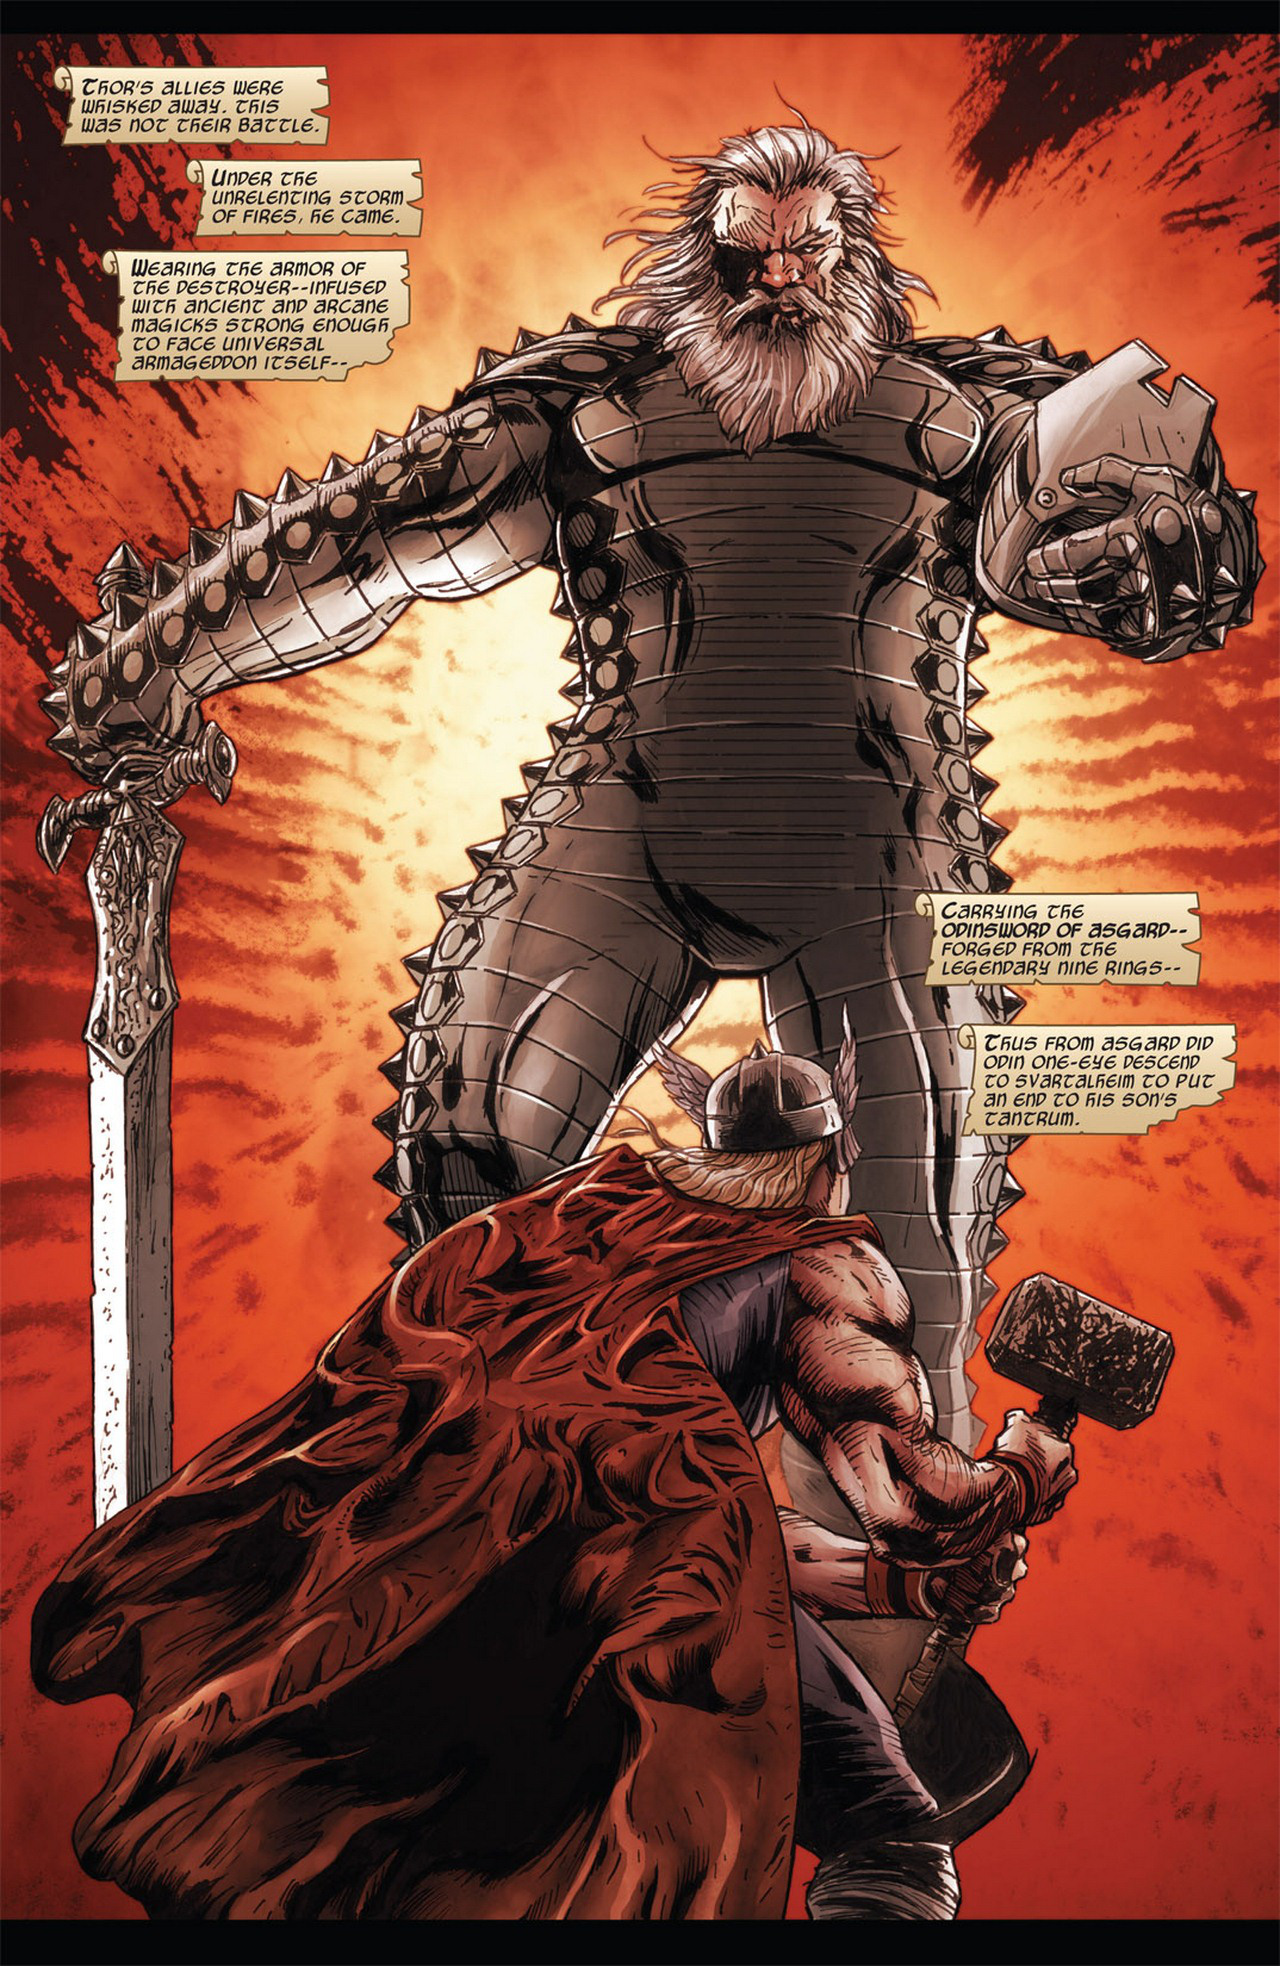 Marvel Comics: Tìm hiểu về thanh thần kiếm Odinsword - 1 trong những bảo khí mạnh nhất Asgard - Ảnh 3.